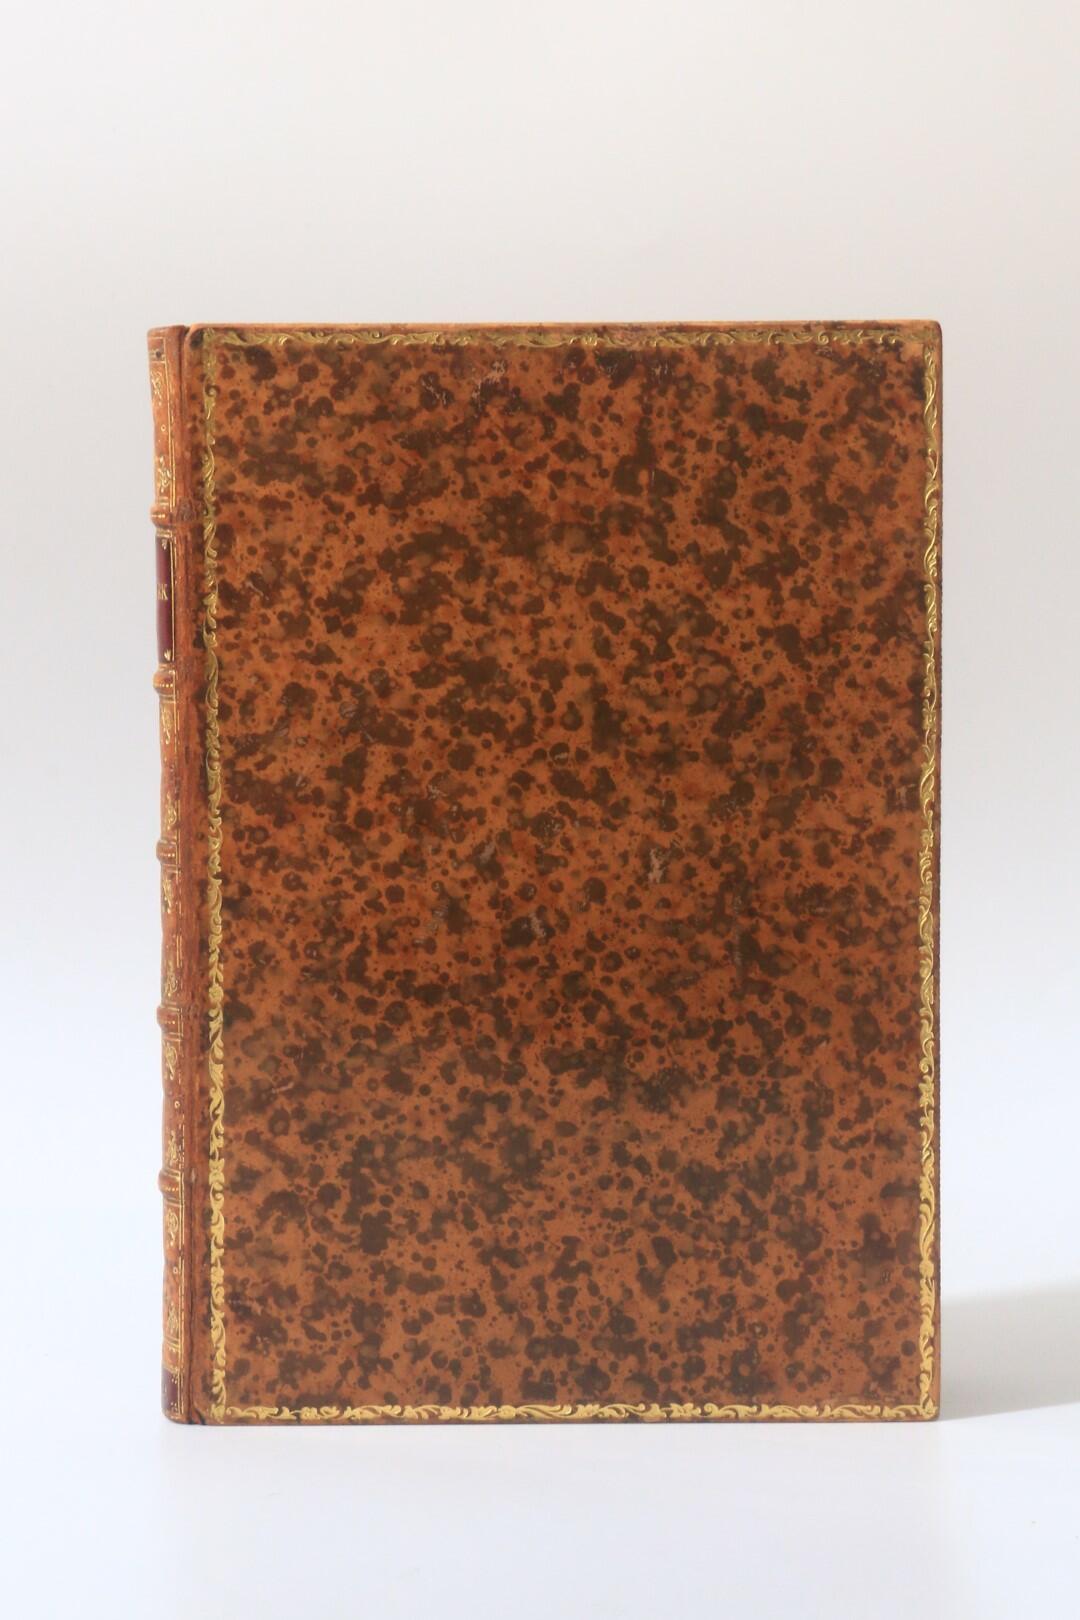 William Beckford - Vathek - Chez Clarke, 1815, First Edition.